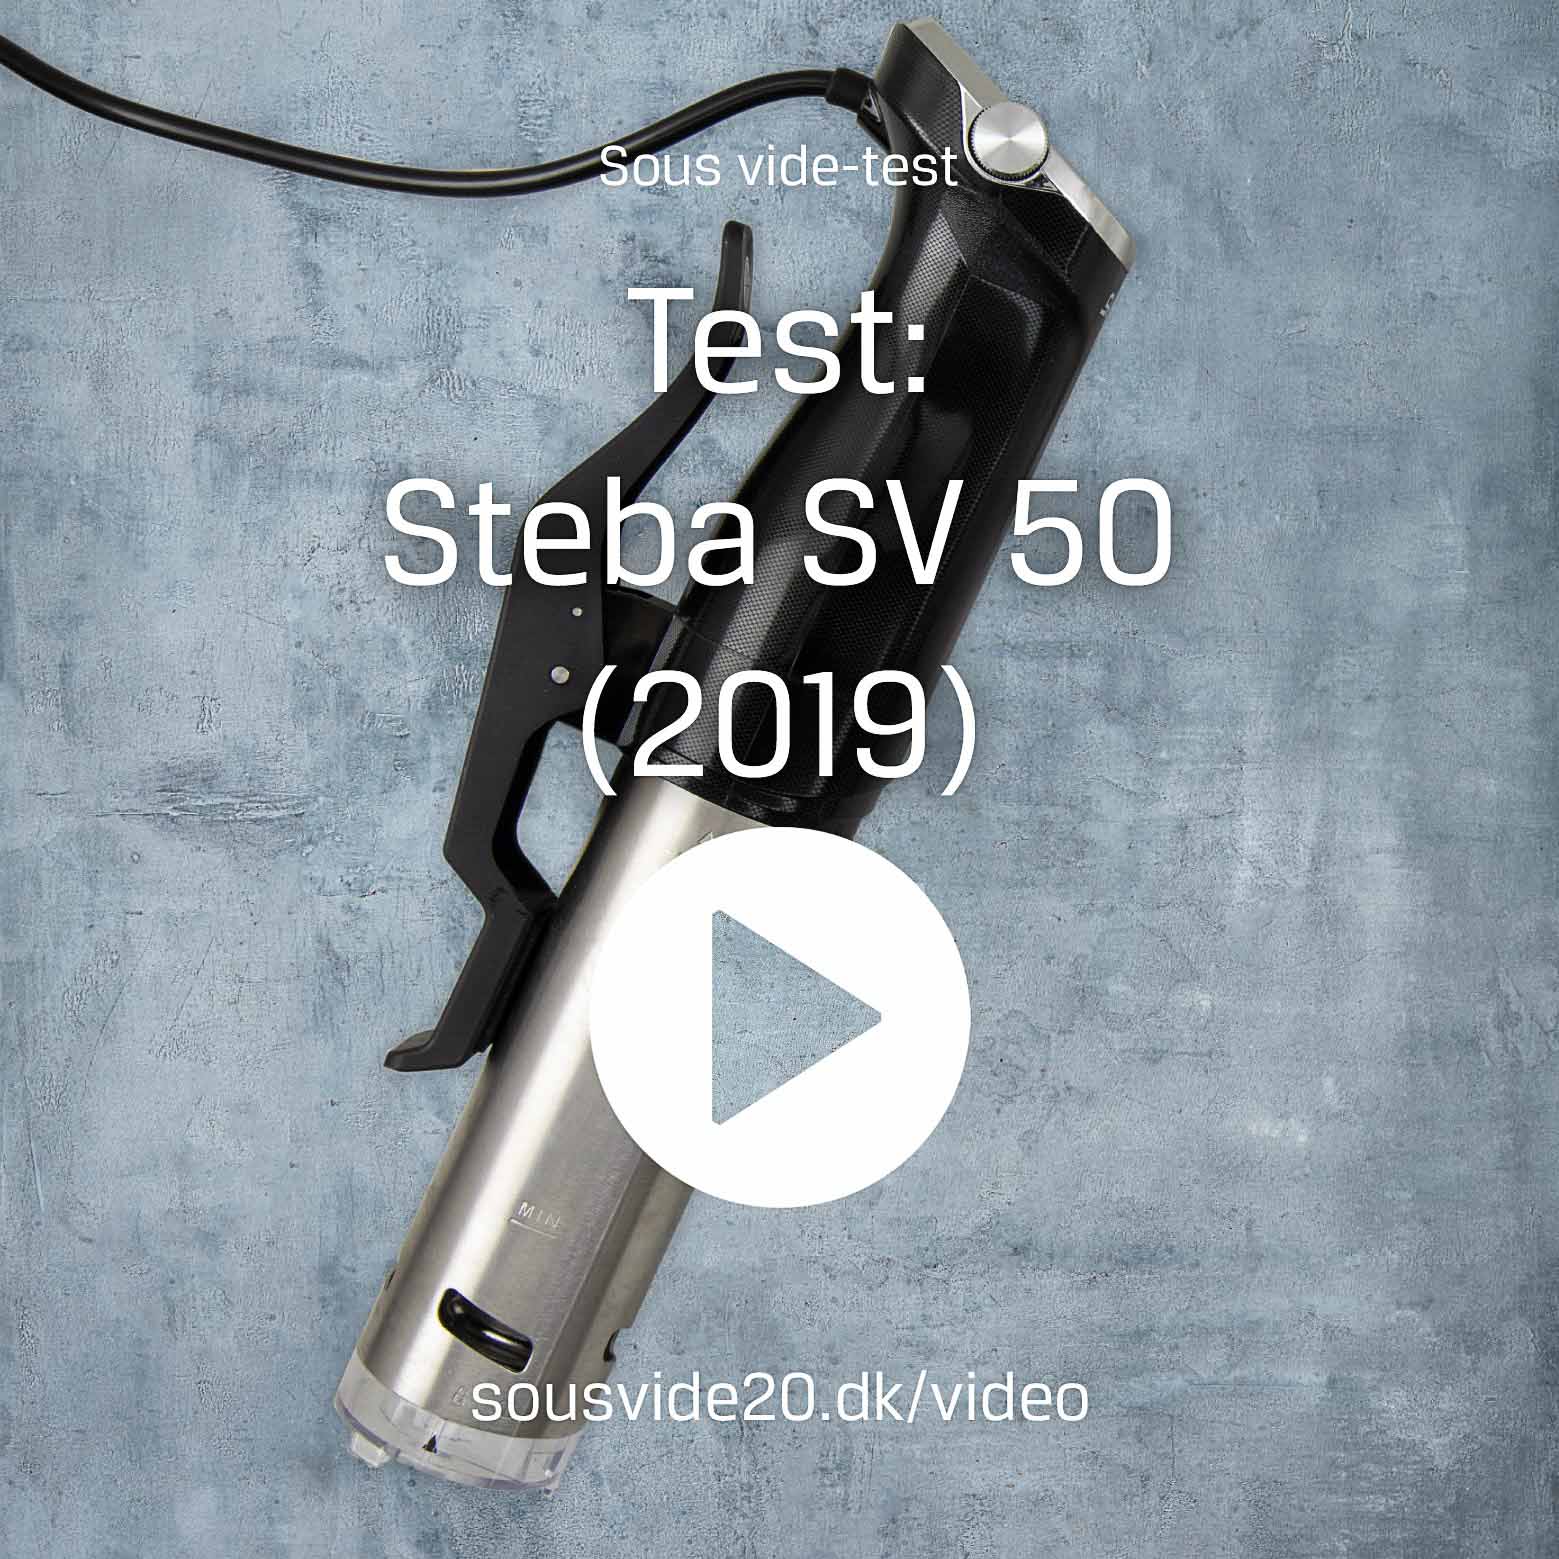 Afbrydelse Europa Morgen Video med hurtig gennemgang af Stebas SV 50 (2019-version) | Sous vide 2.0